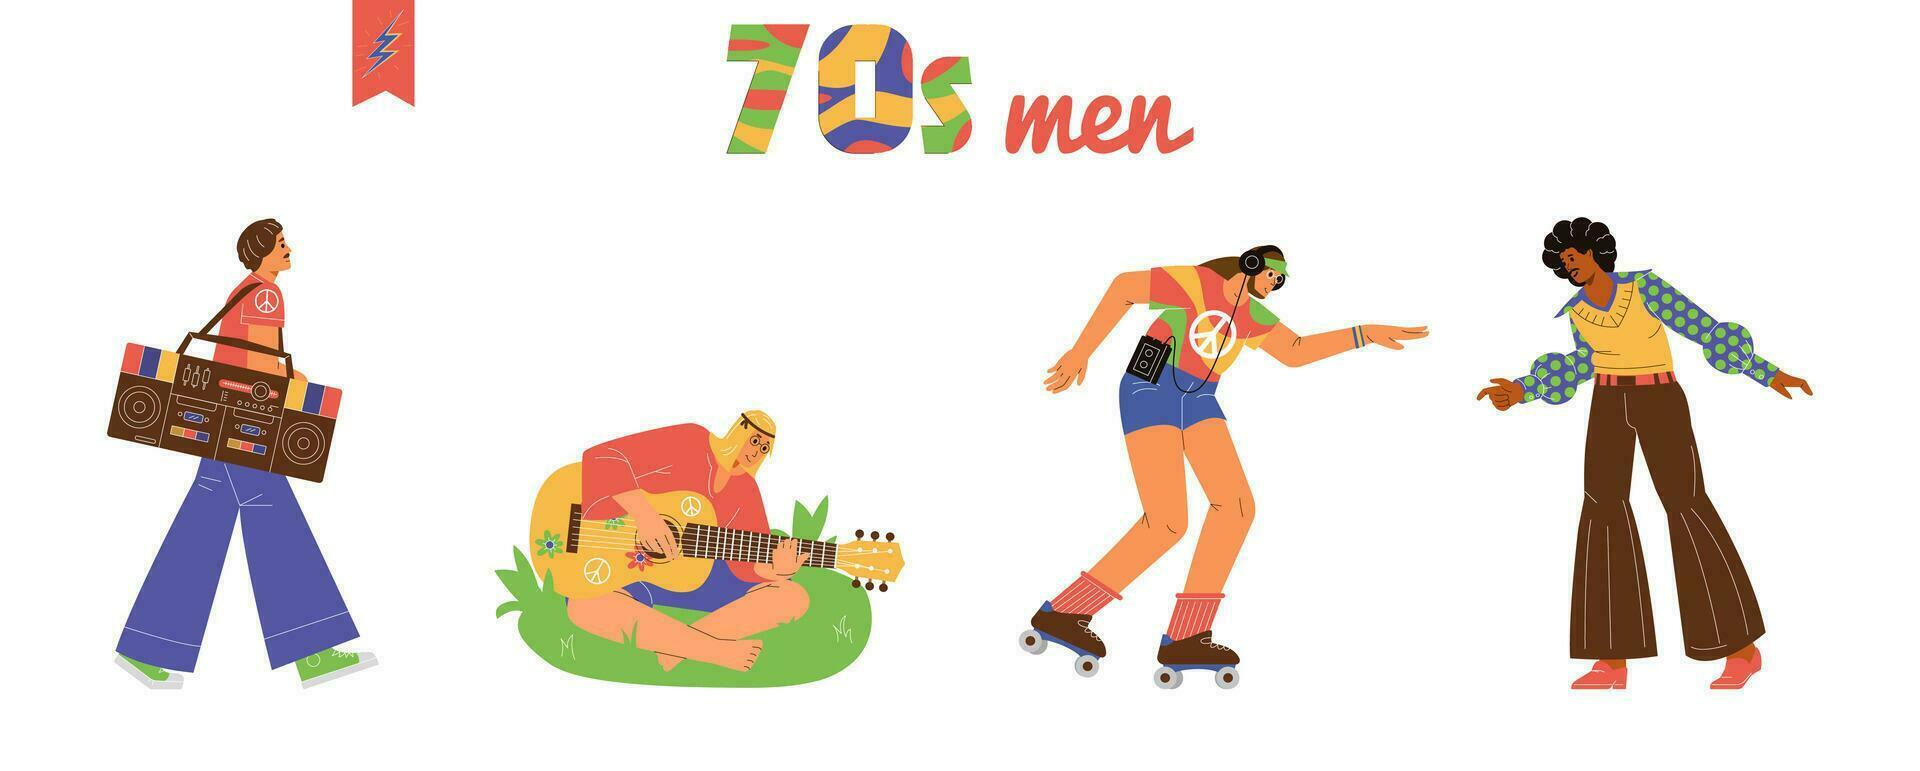 hombres desde el 70s vector ilustraciones colocar. hombres rodillo Patinaje, bailando disco, hippie jugando el guitarra, caminando con auge caja.